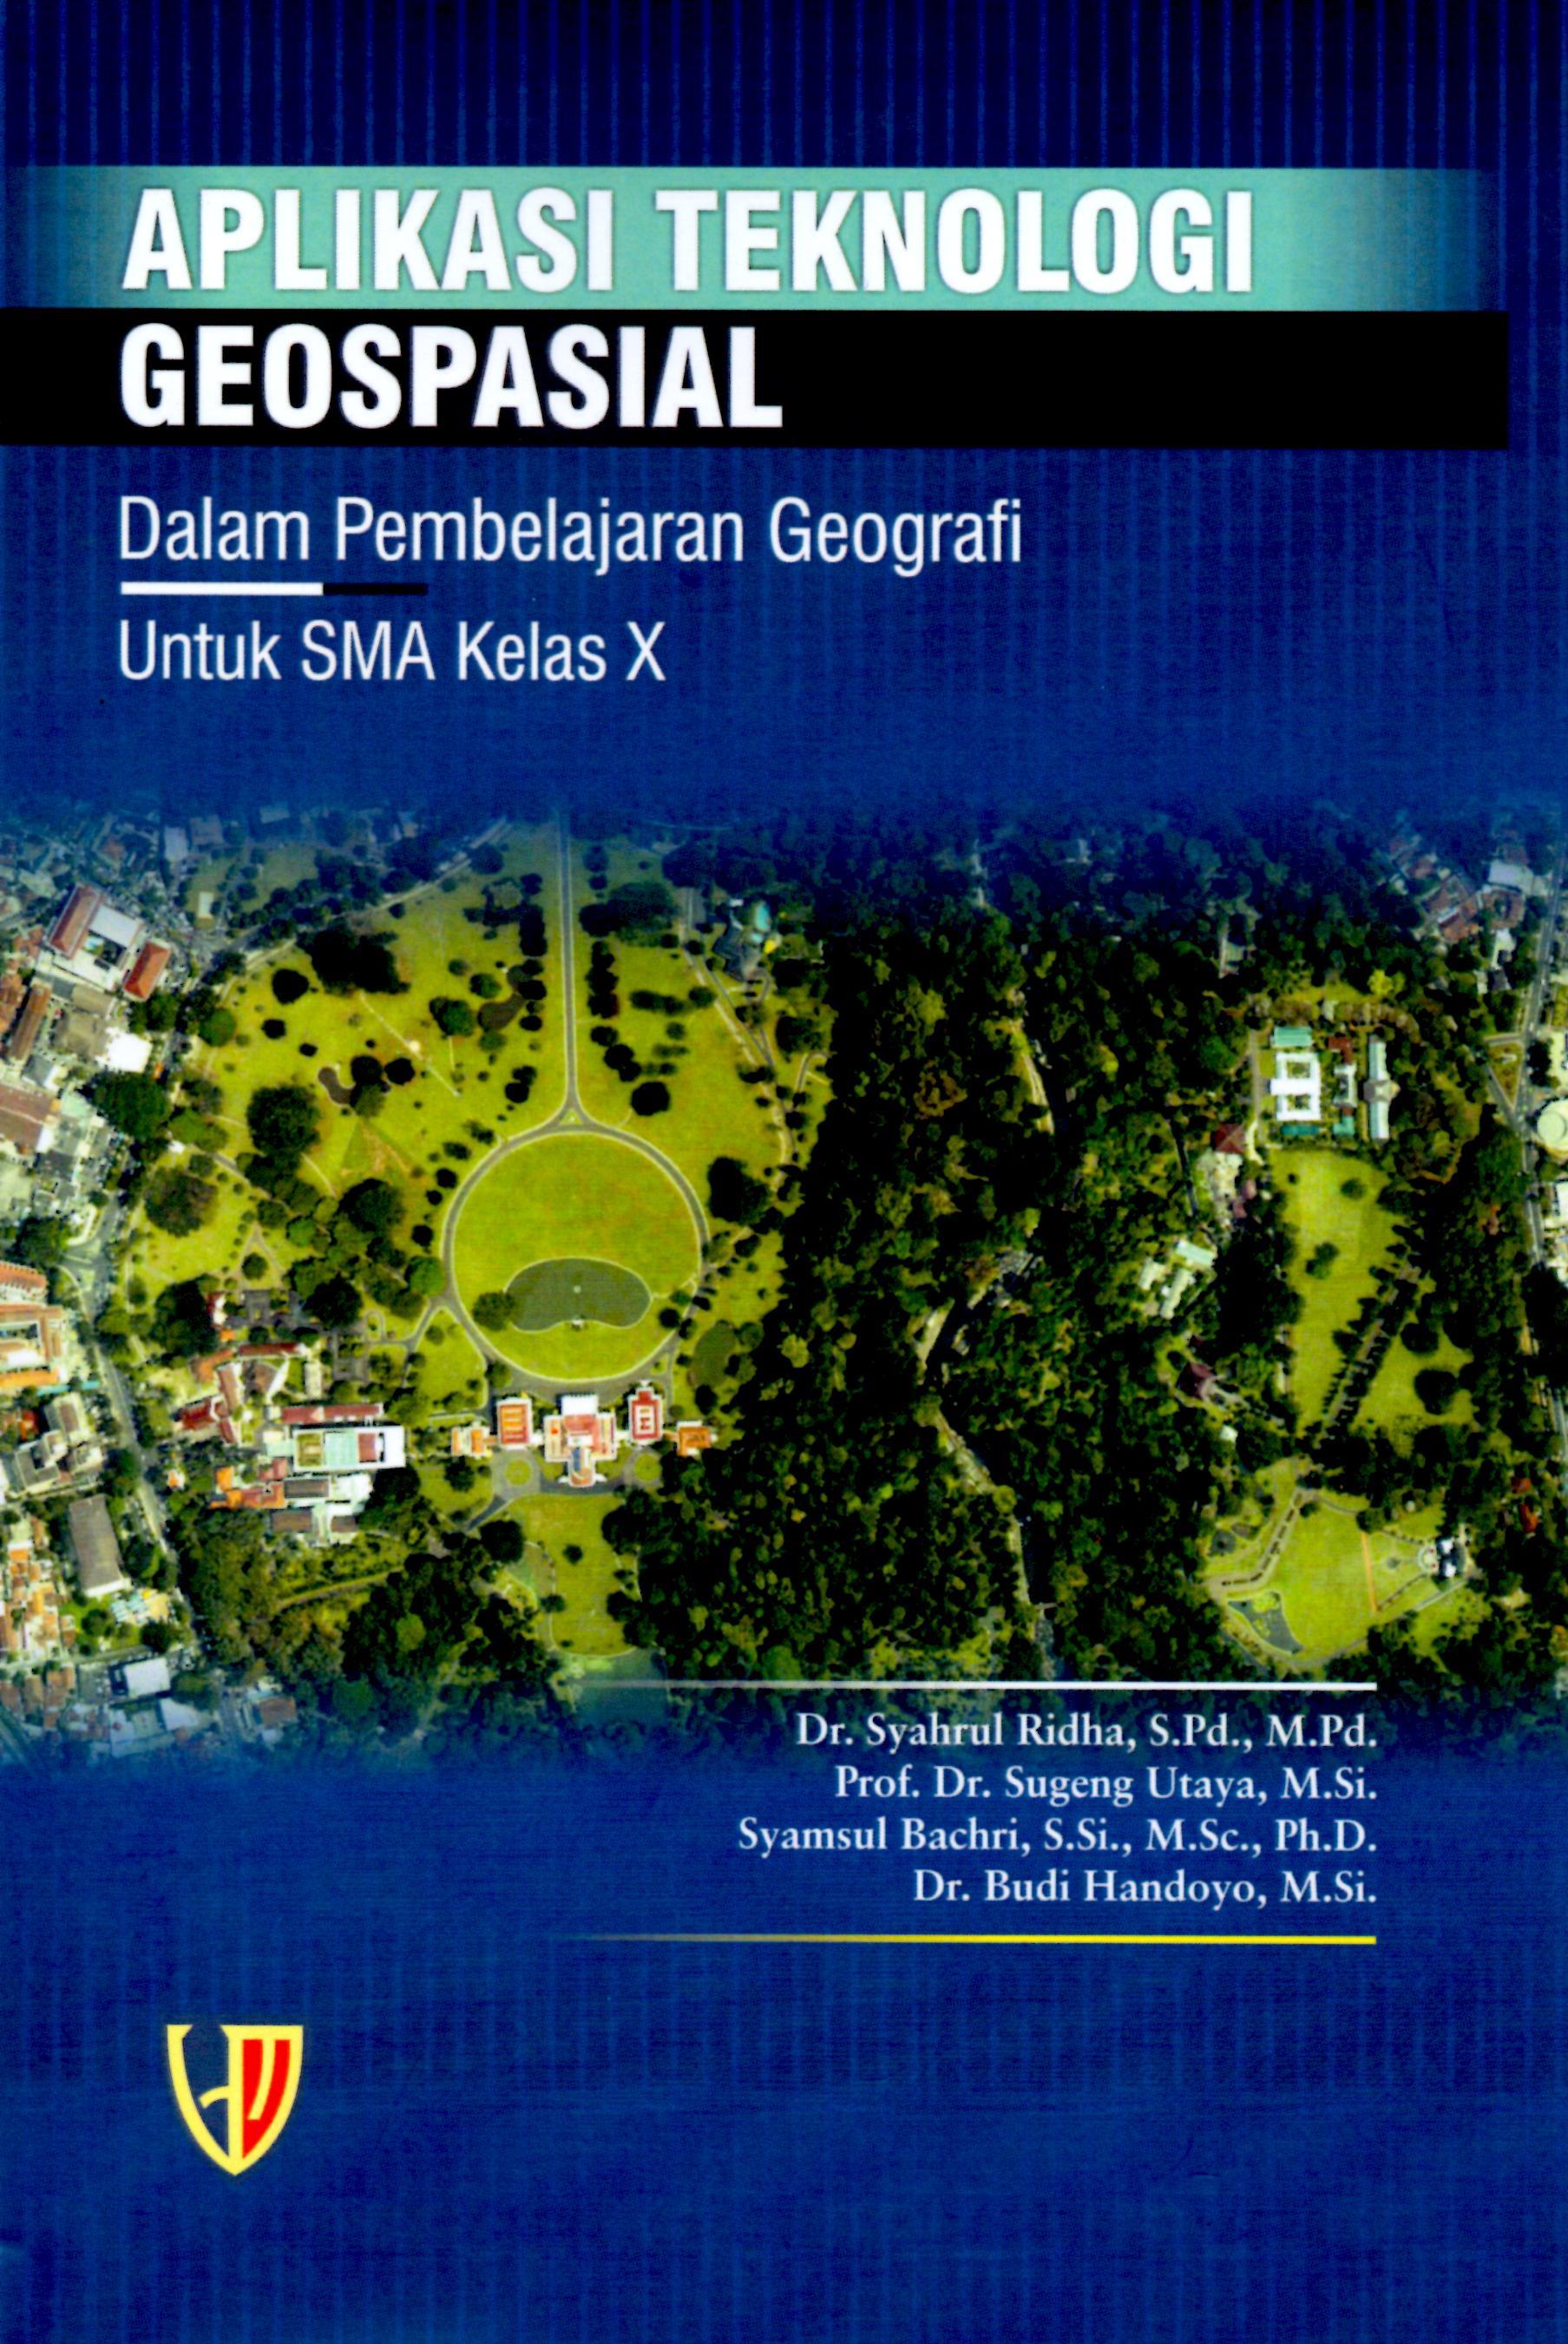 Aplikasi Teknologi Geospal dalam Pembelajaran Geografim untuk SMA Kelas X